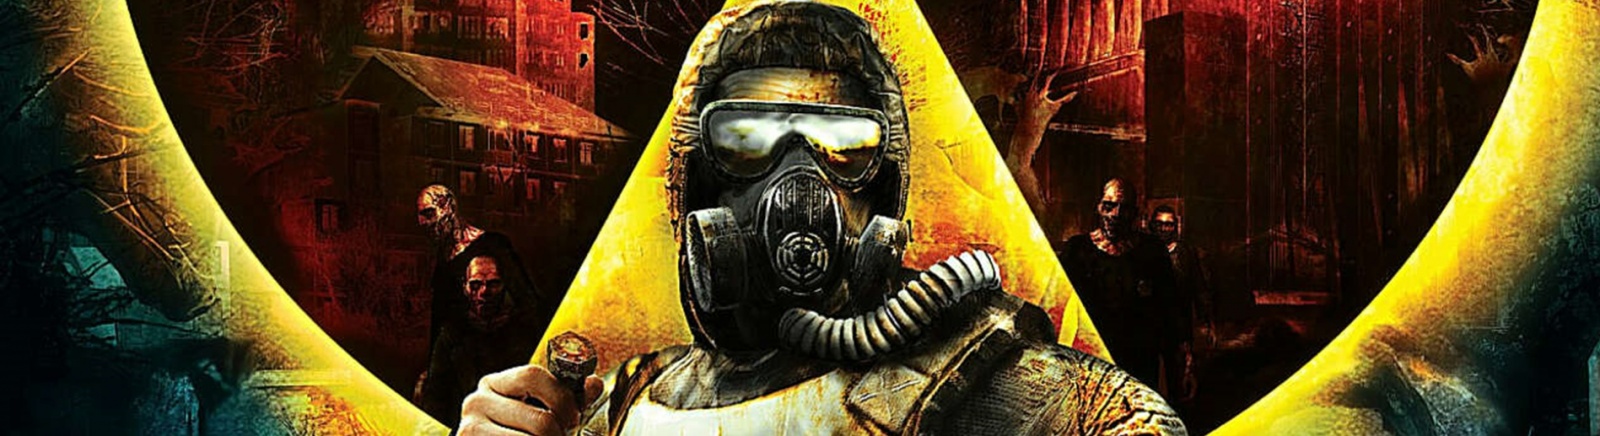 Как повысить FPS в S.T.A.L.K.E.R.: Shadow of Chernobyl (Stalker), запустить игру на слабом ПК и получить 60 FPS - оптимизация